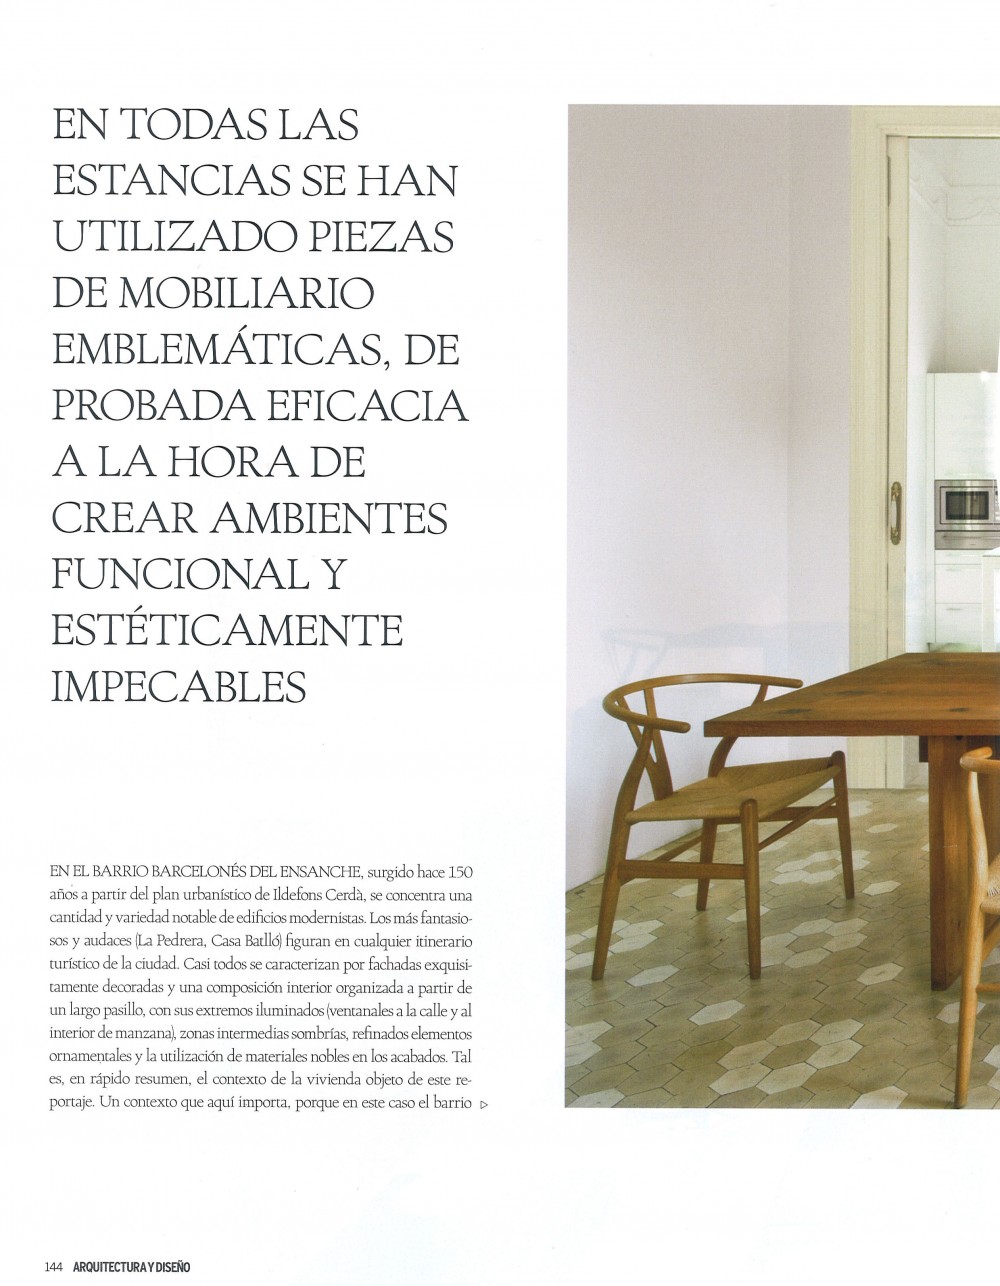 Arquitectura y Diseño 108.,Proyecto de renovación de vivienda en el ensanche de Barcelona